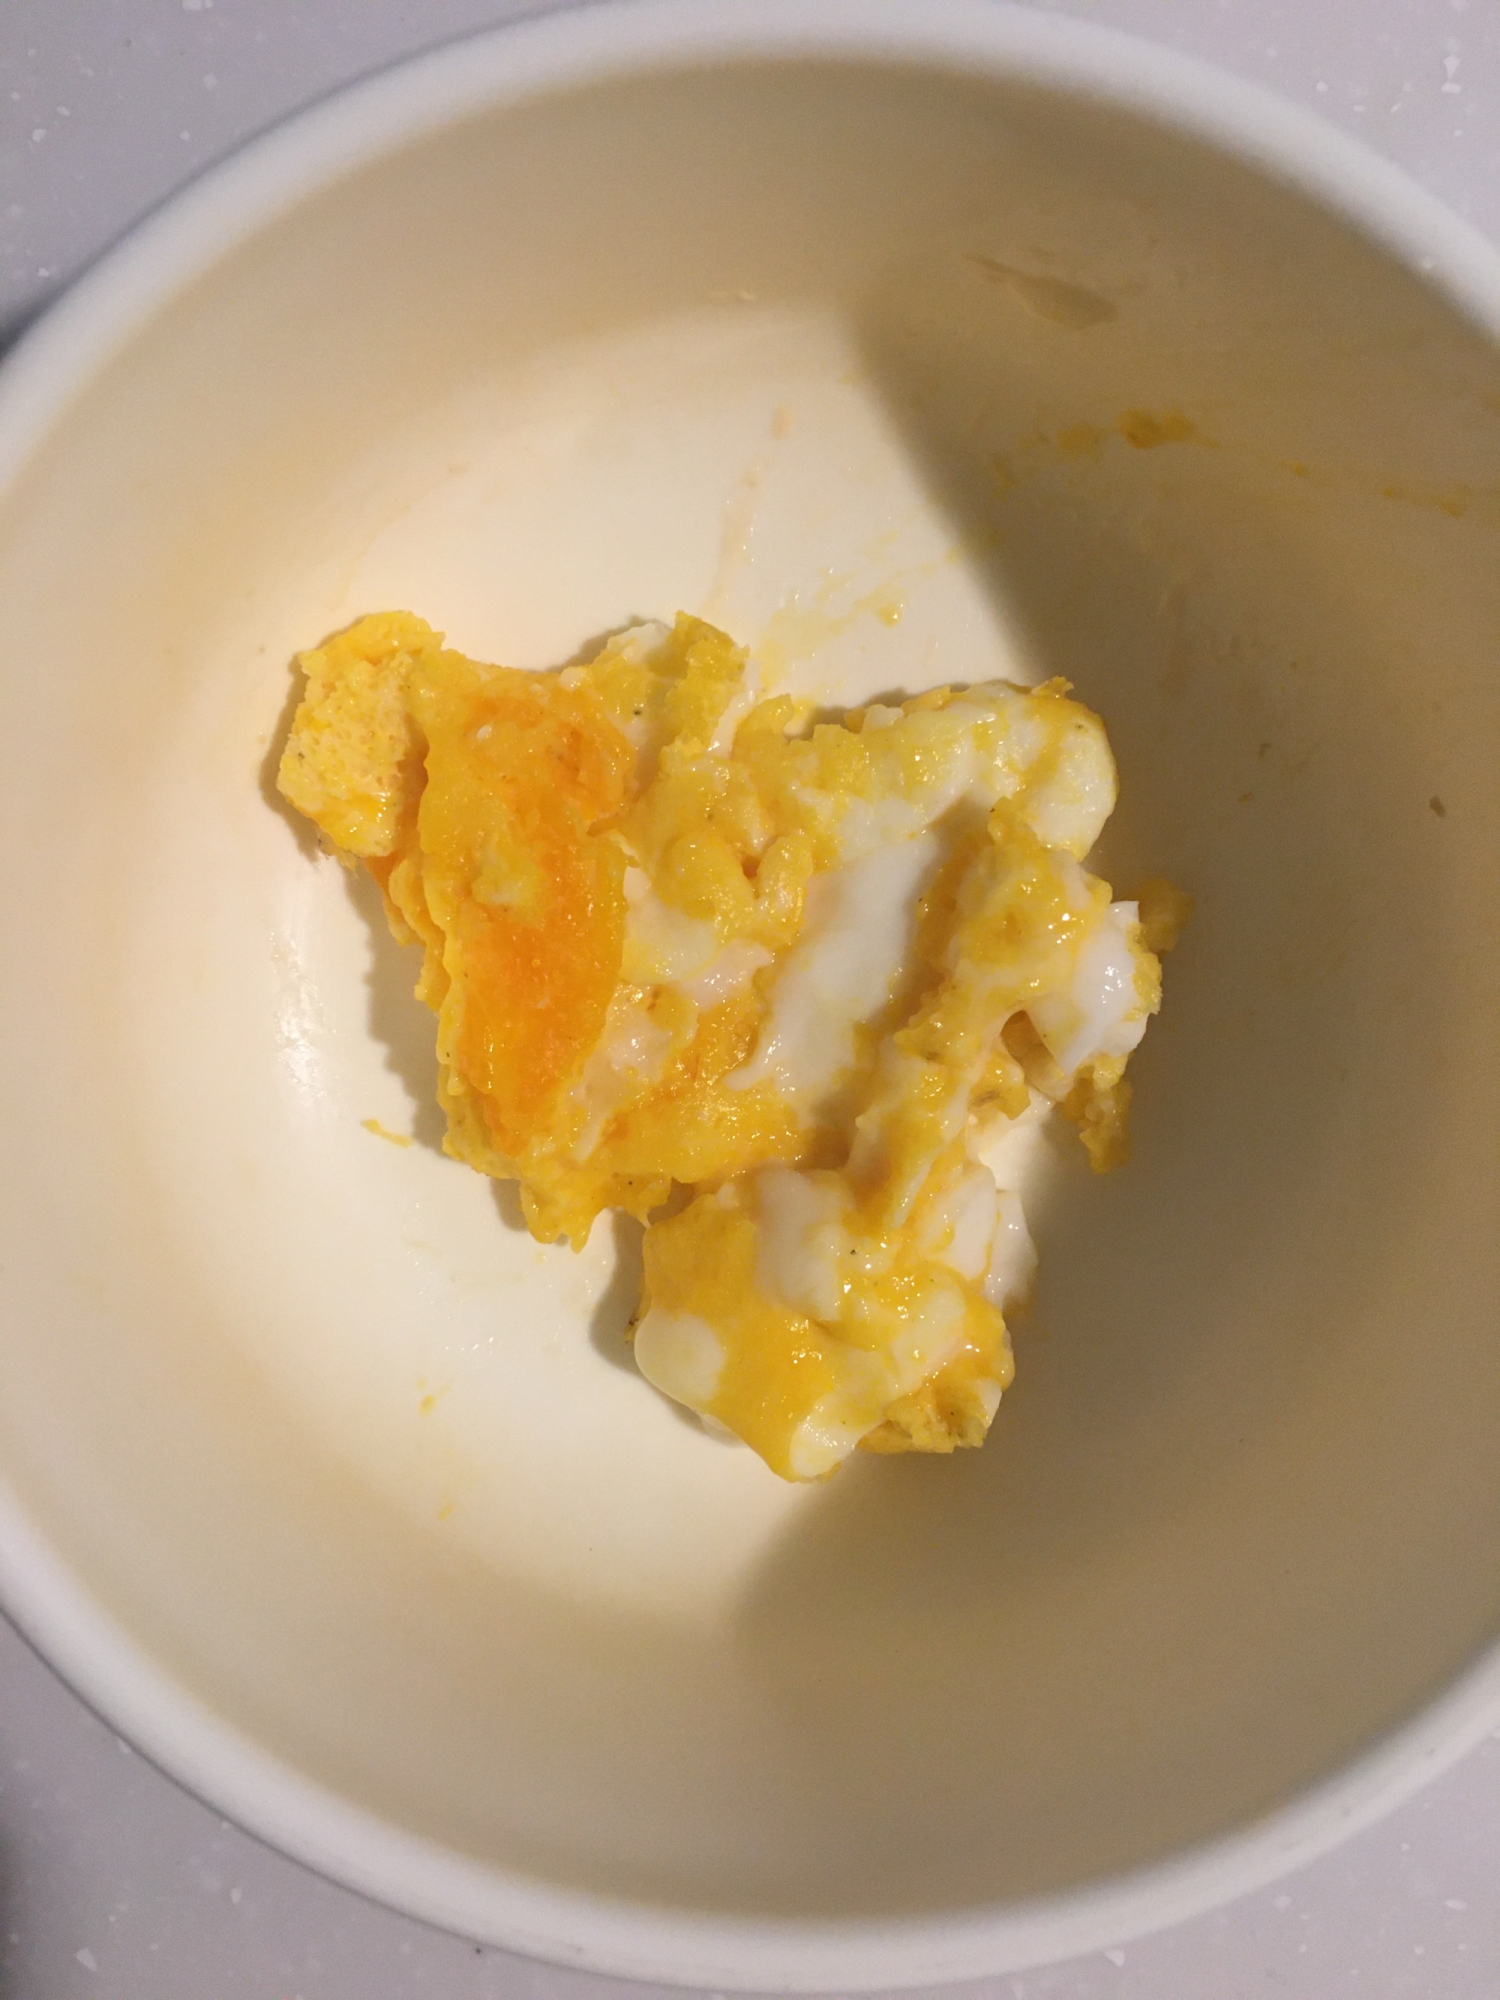 バターを使った炒り卵